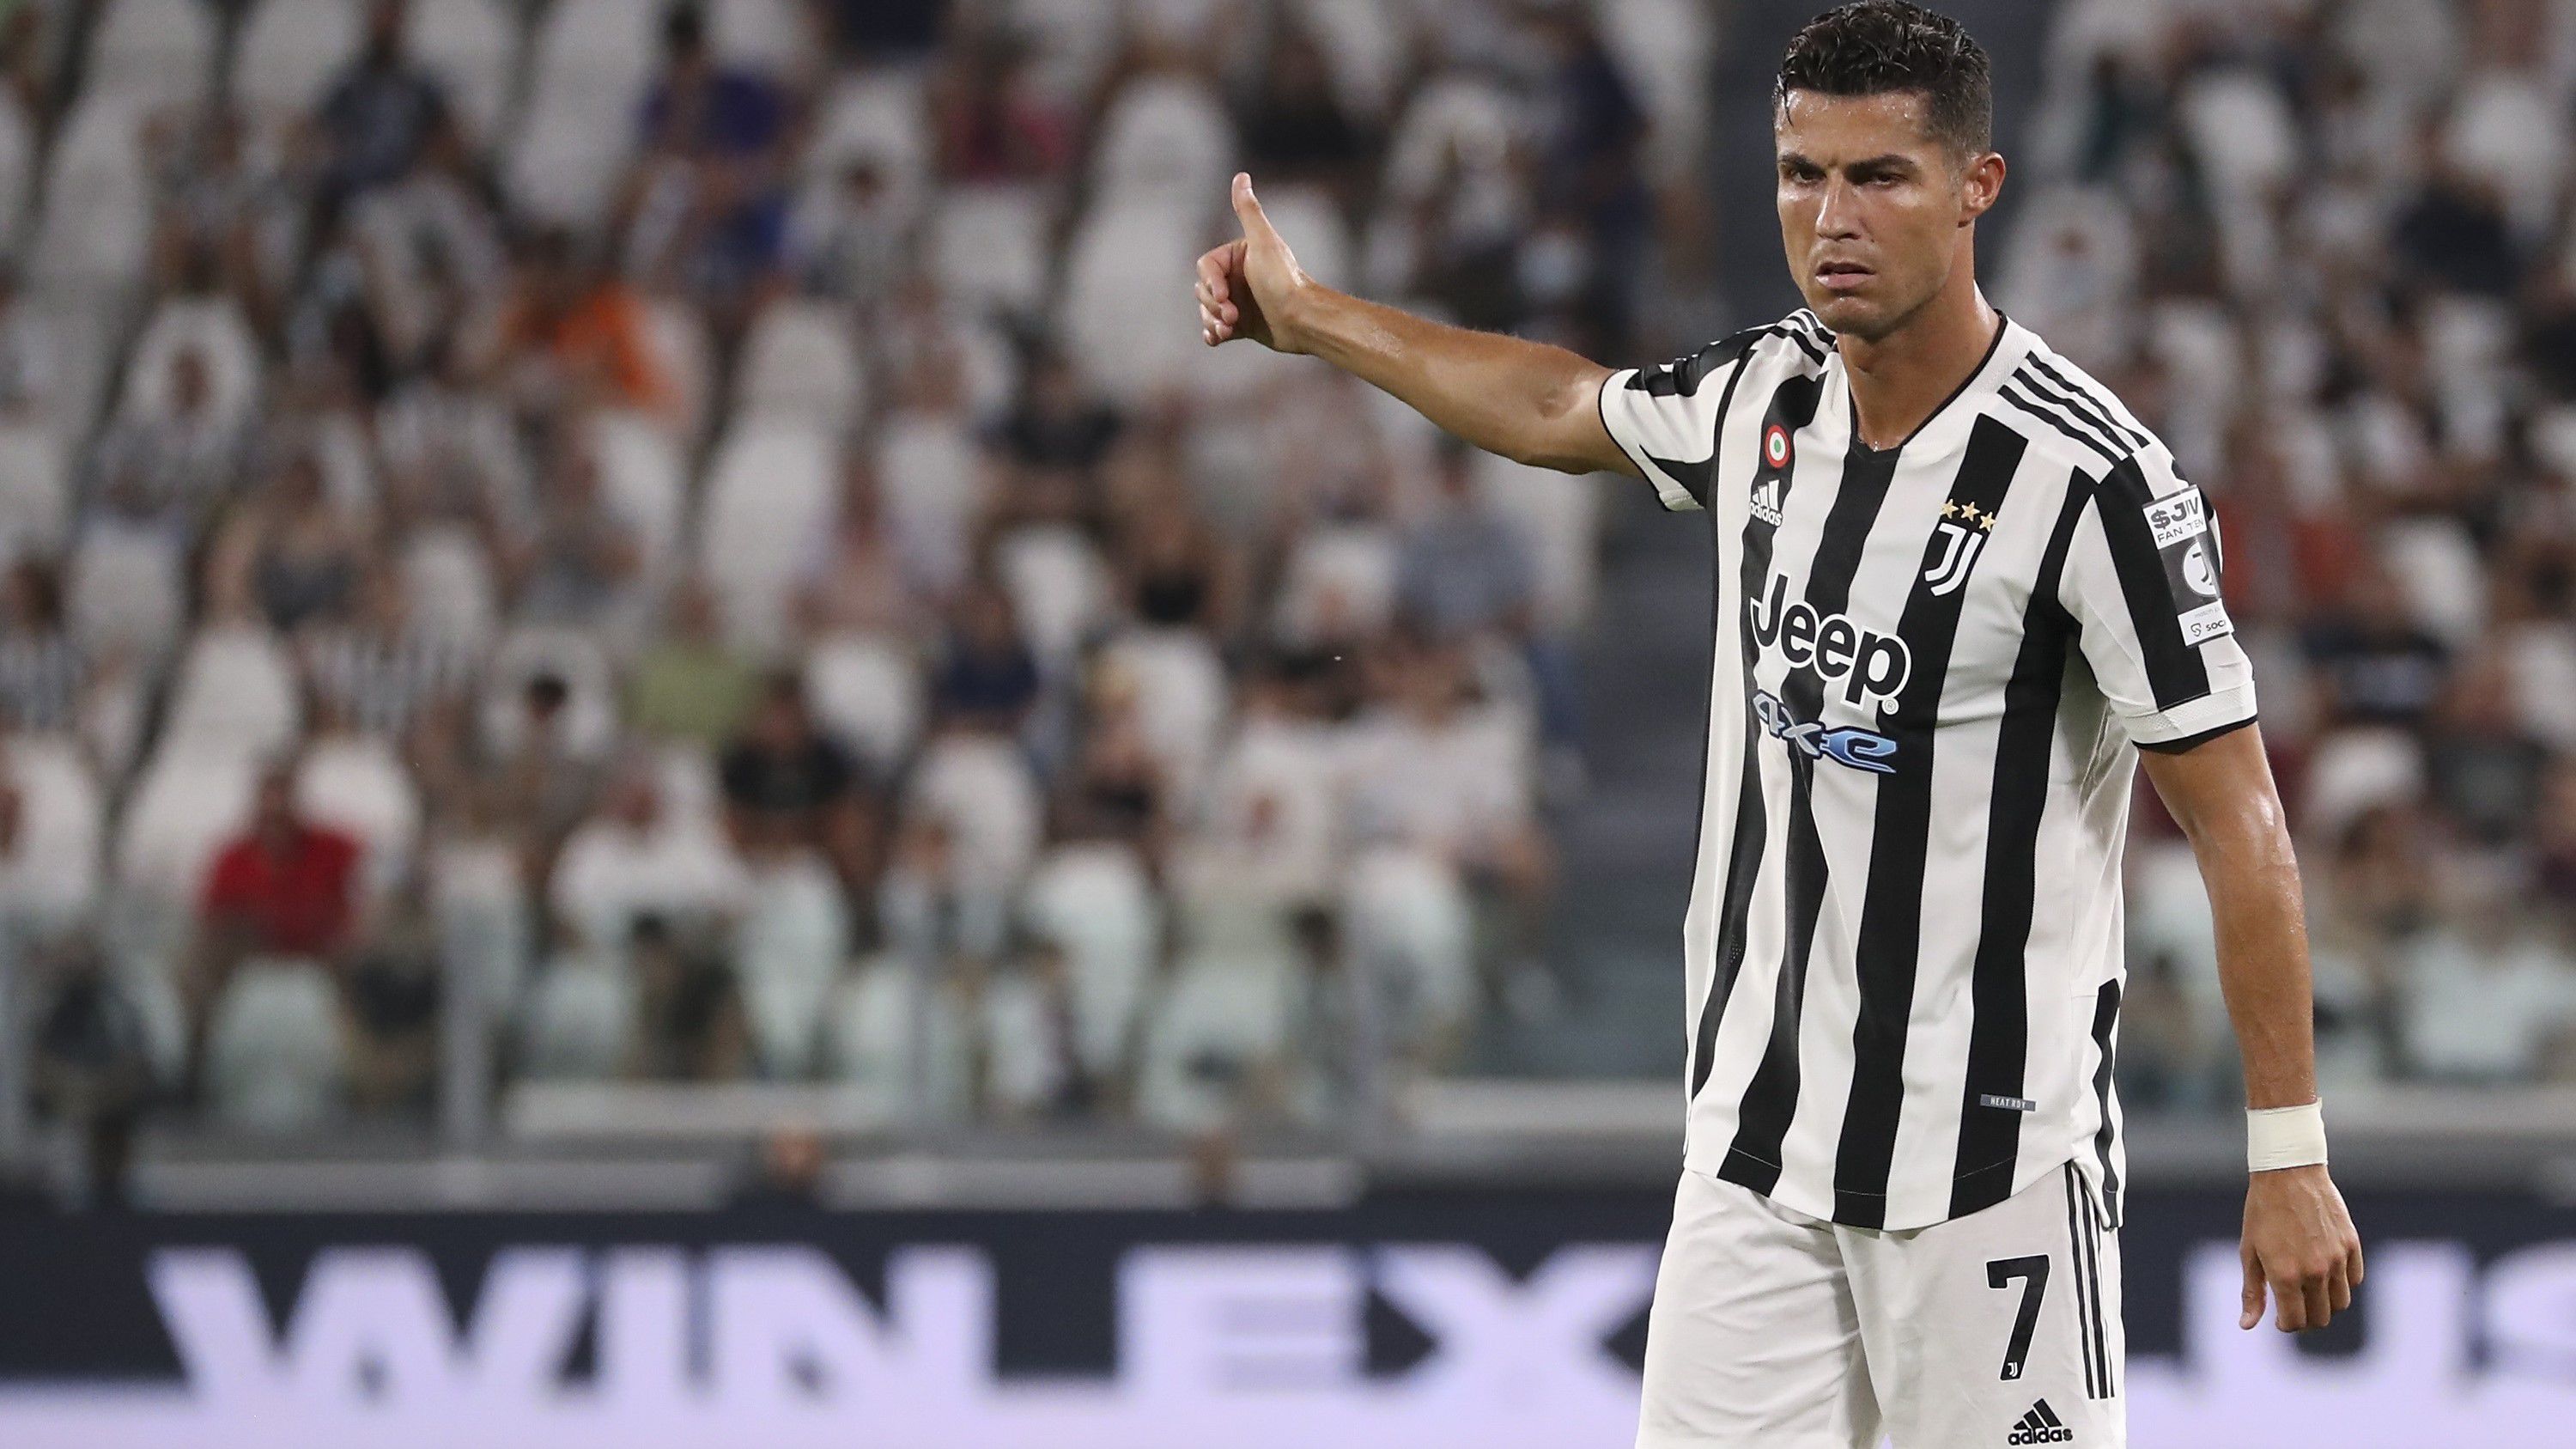 Cristiano Ronaldo morcos, mert állítása szerint nem kapott meg közel húszmillió eurót az olasz klubtól. (Fotó: Getty Images)